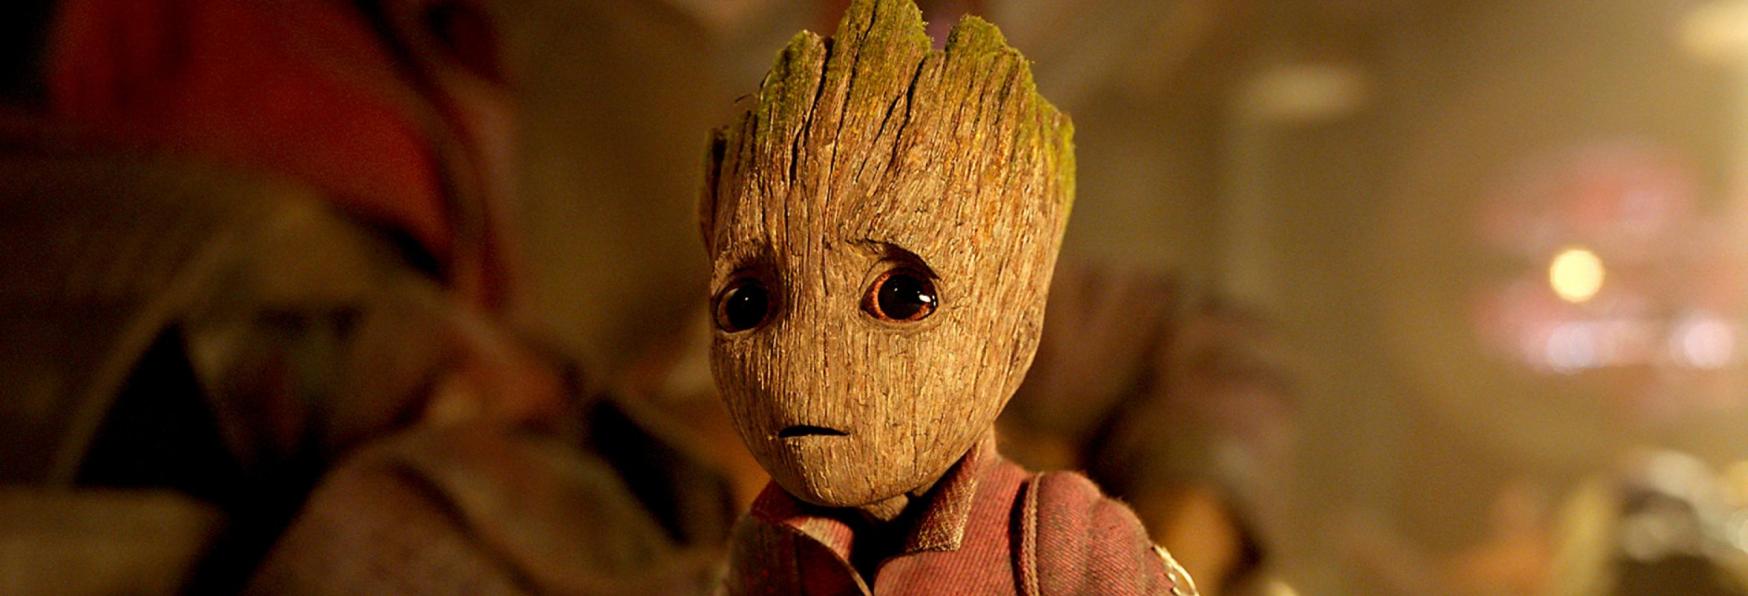 I Am Groot: i Corti della nuova Serie Animata non faranno parte della Saga Guardiani della Galassia